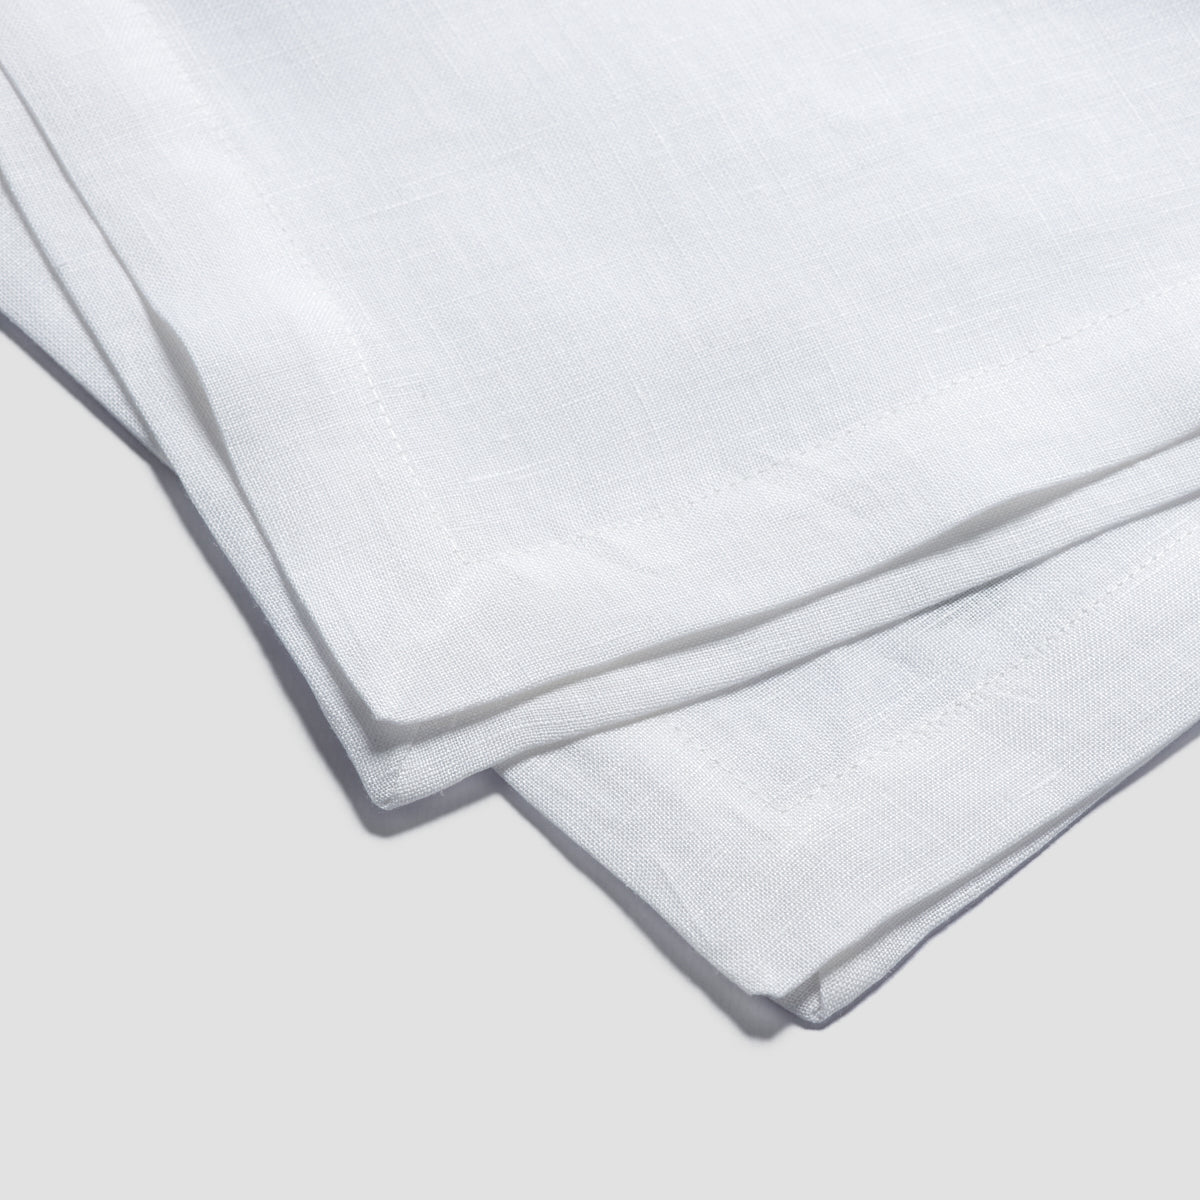 White Linen Table Runner - Piglet in Bed